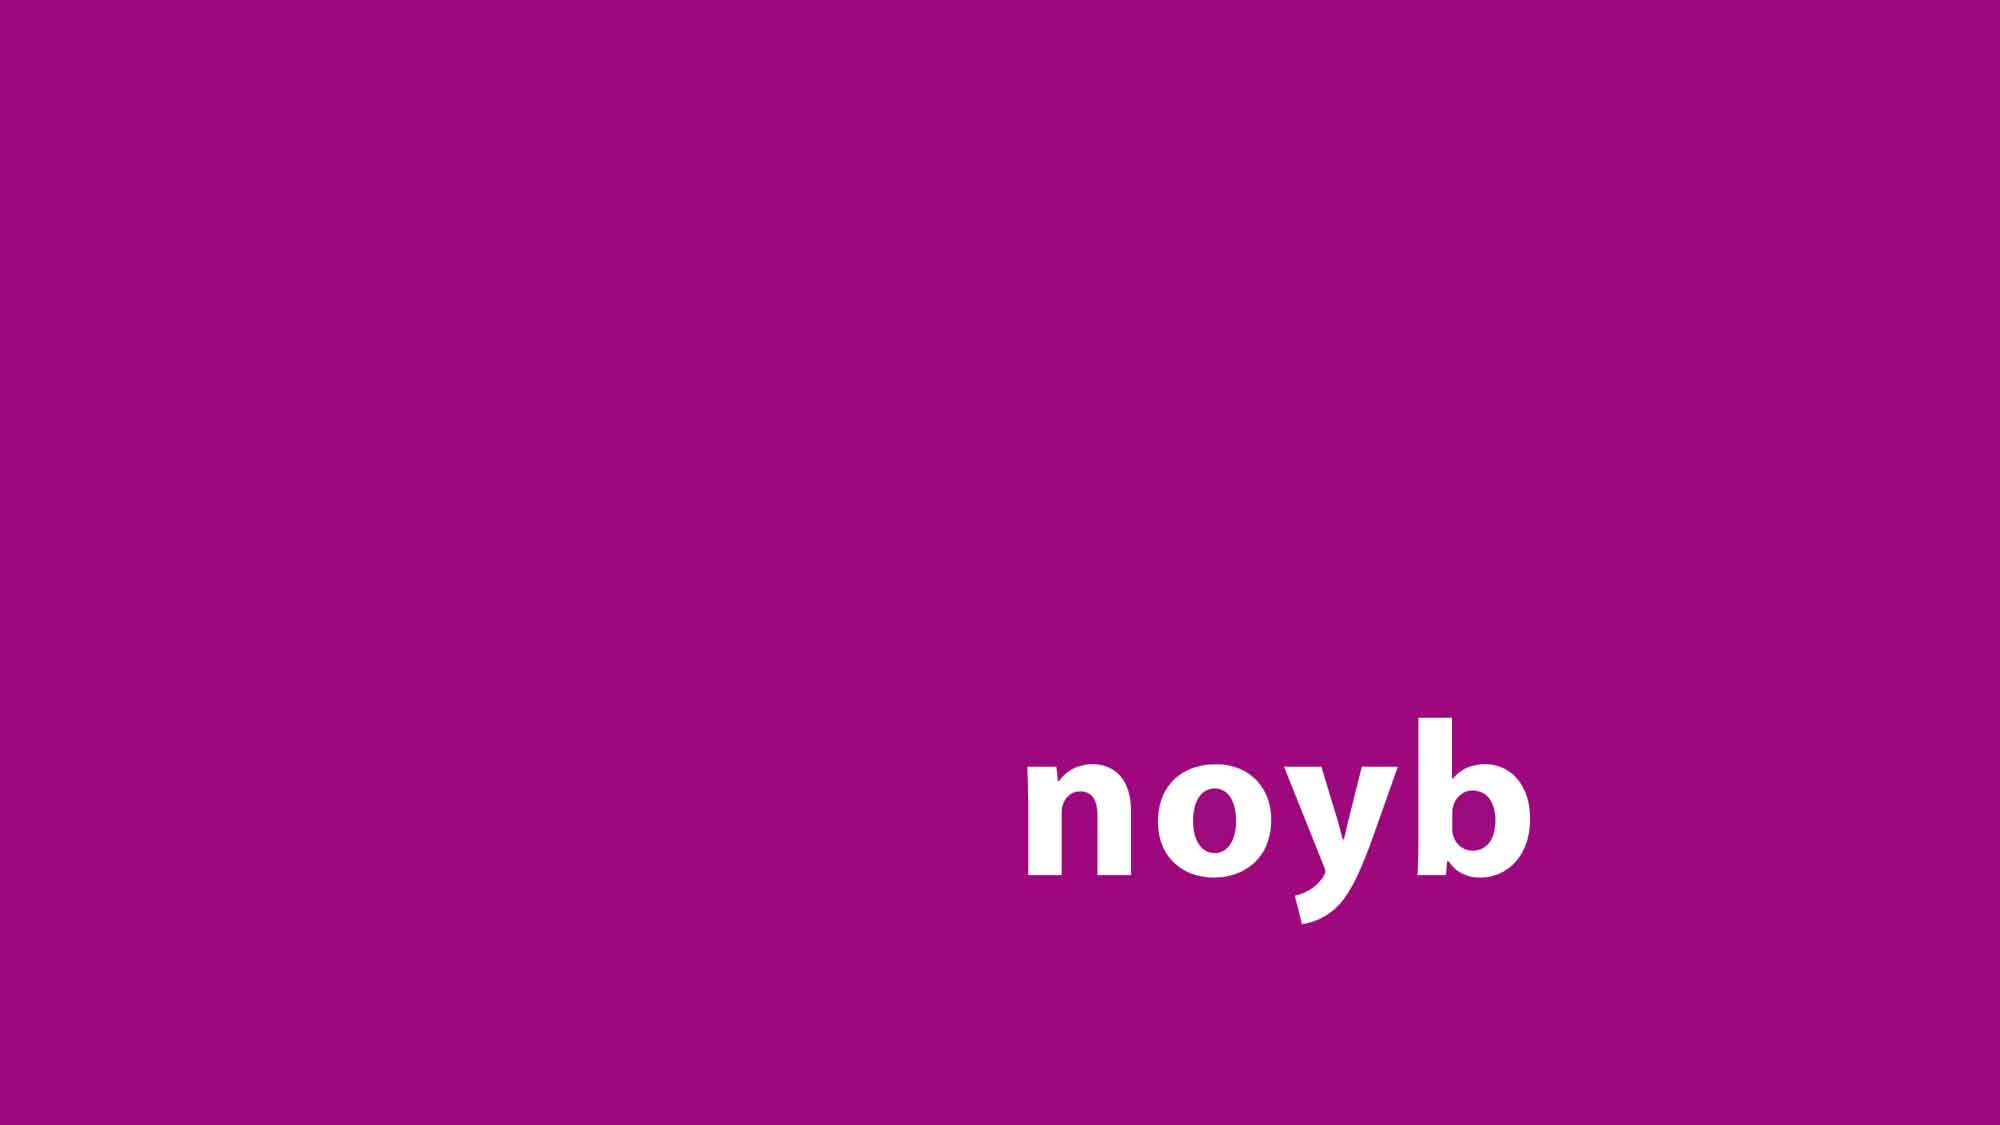 Noyb: Deutsche Behörde erklärt Datenhandel zwischen CRIF und AZ Direct für illegal